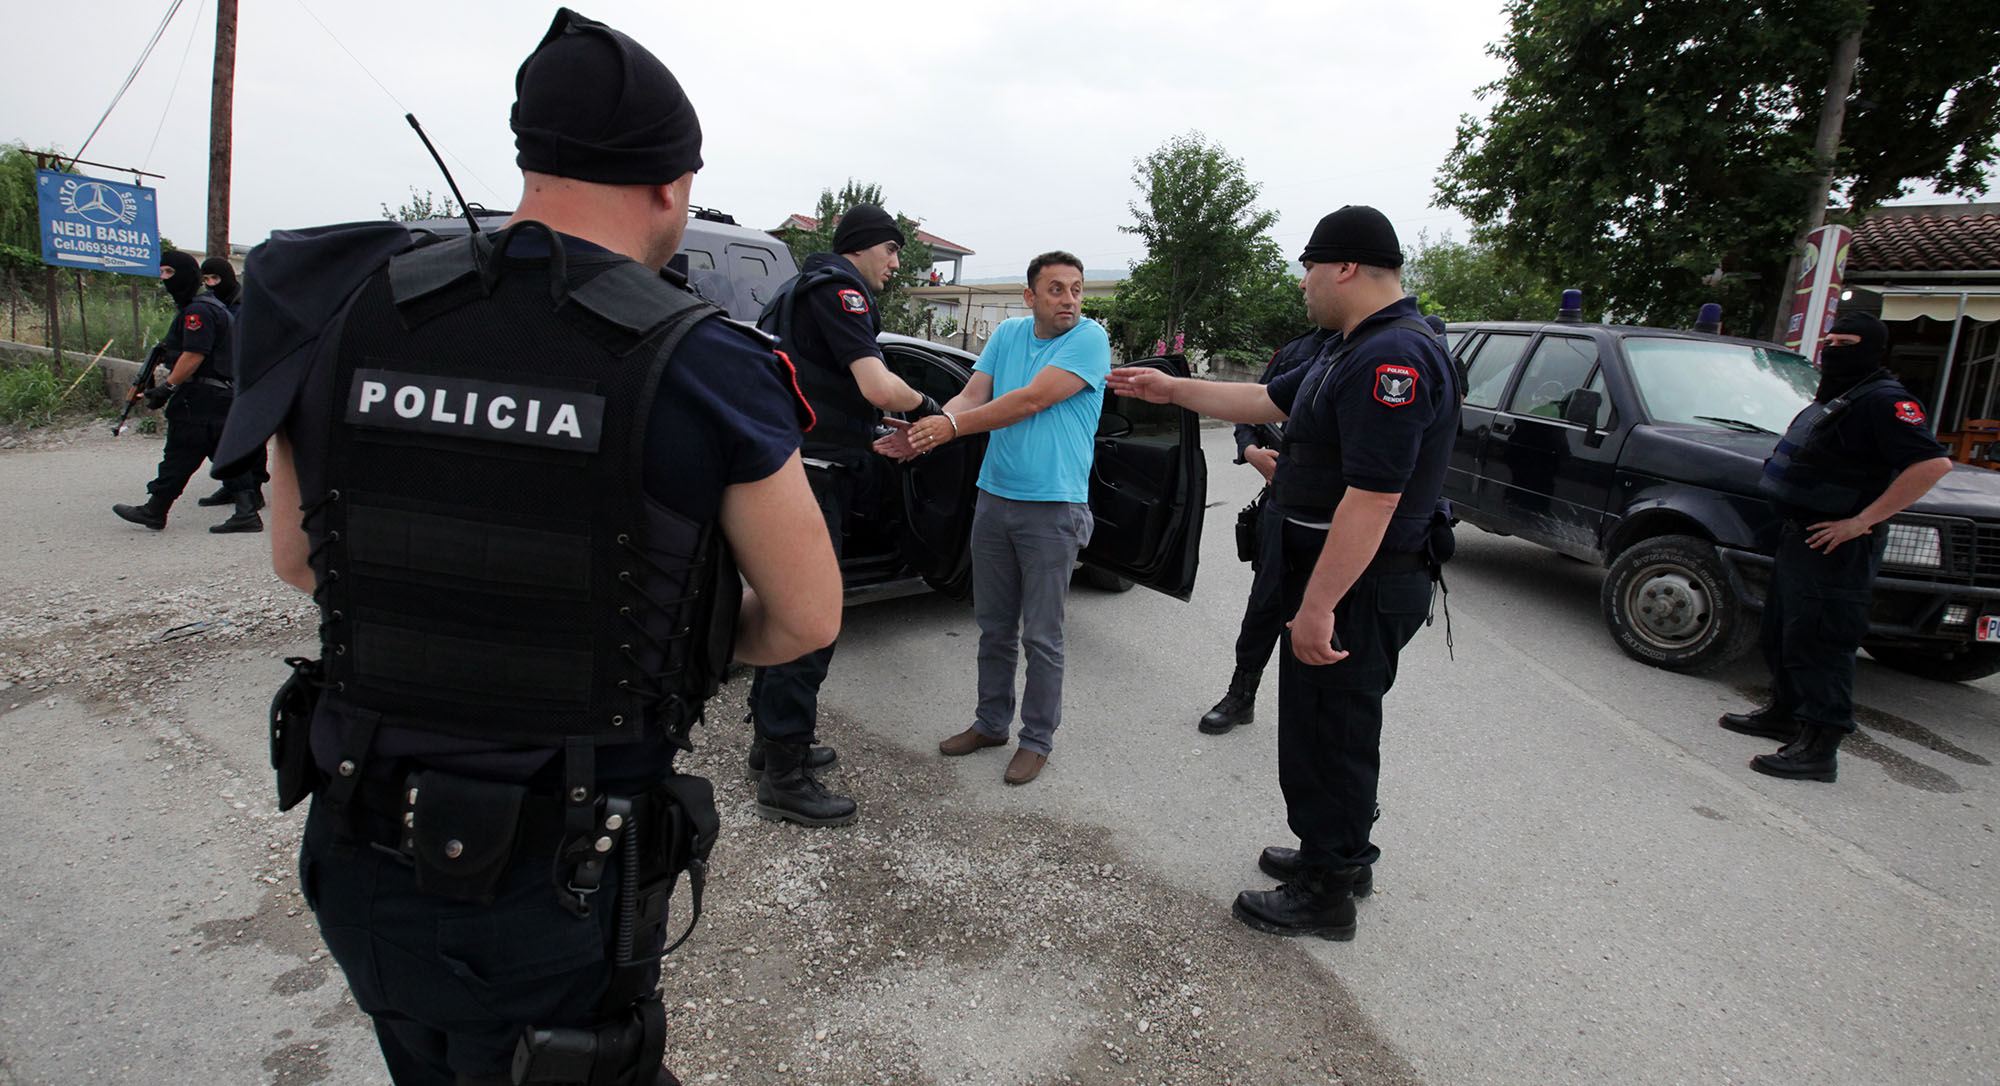 Εξευτελισμός ΕΛ.ΑΣ. μέρος Β’: Η αλβανική αστυνομία την συγχαίρει για τη συνεργασία και σύλληψη Ελλήνων στις Βουλιαράτες